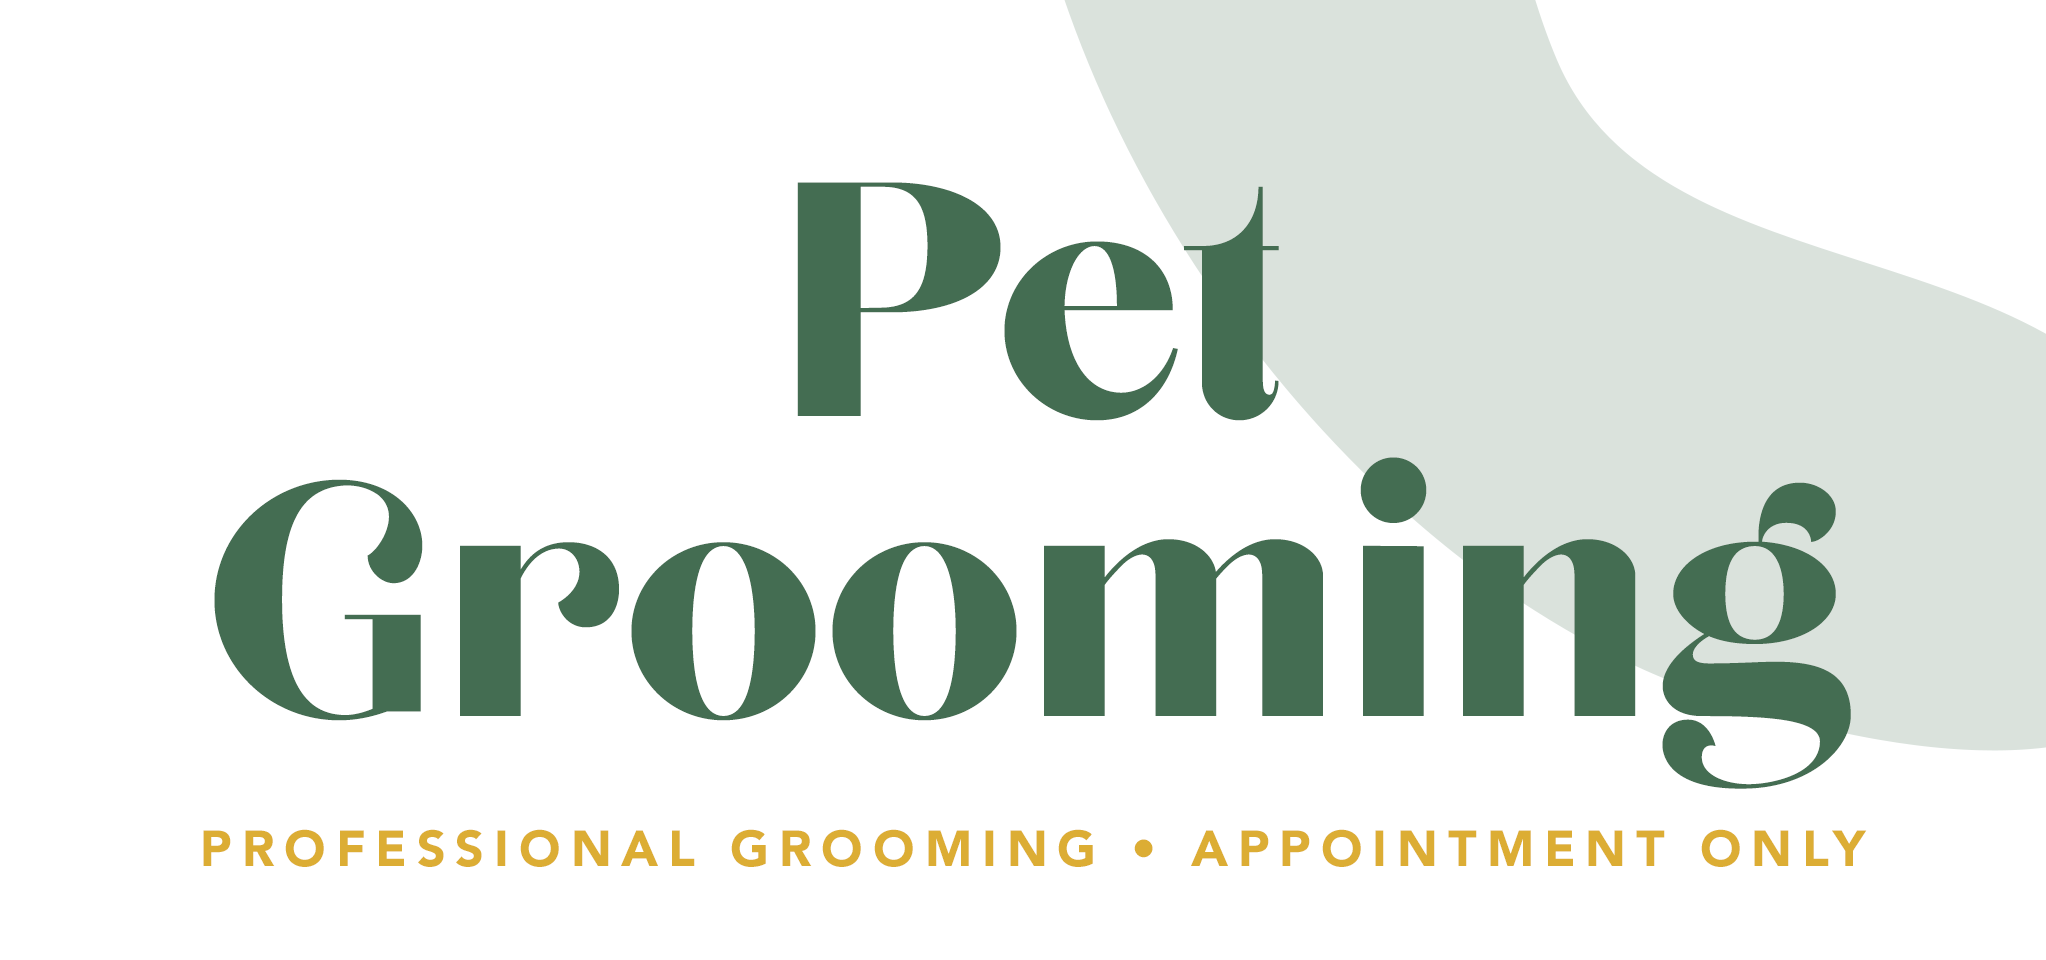 website-grooming1.png